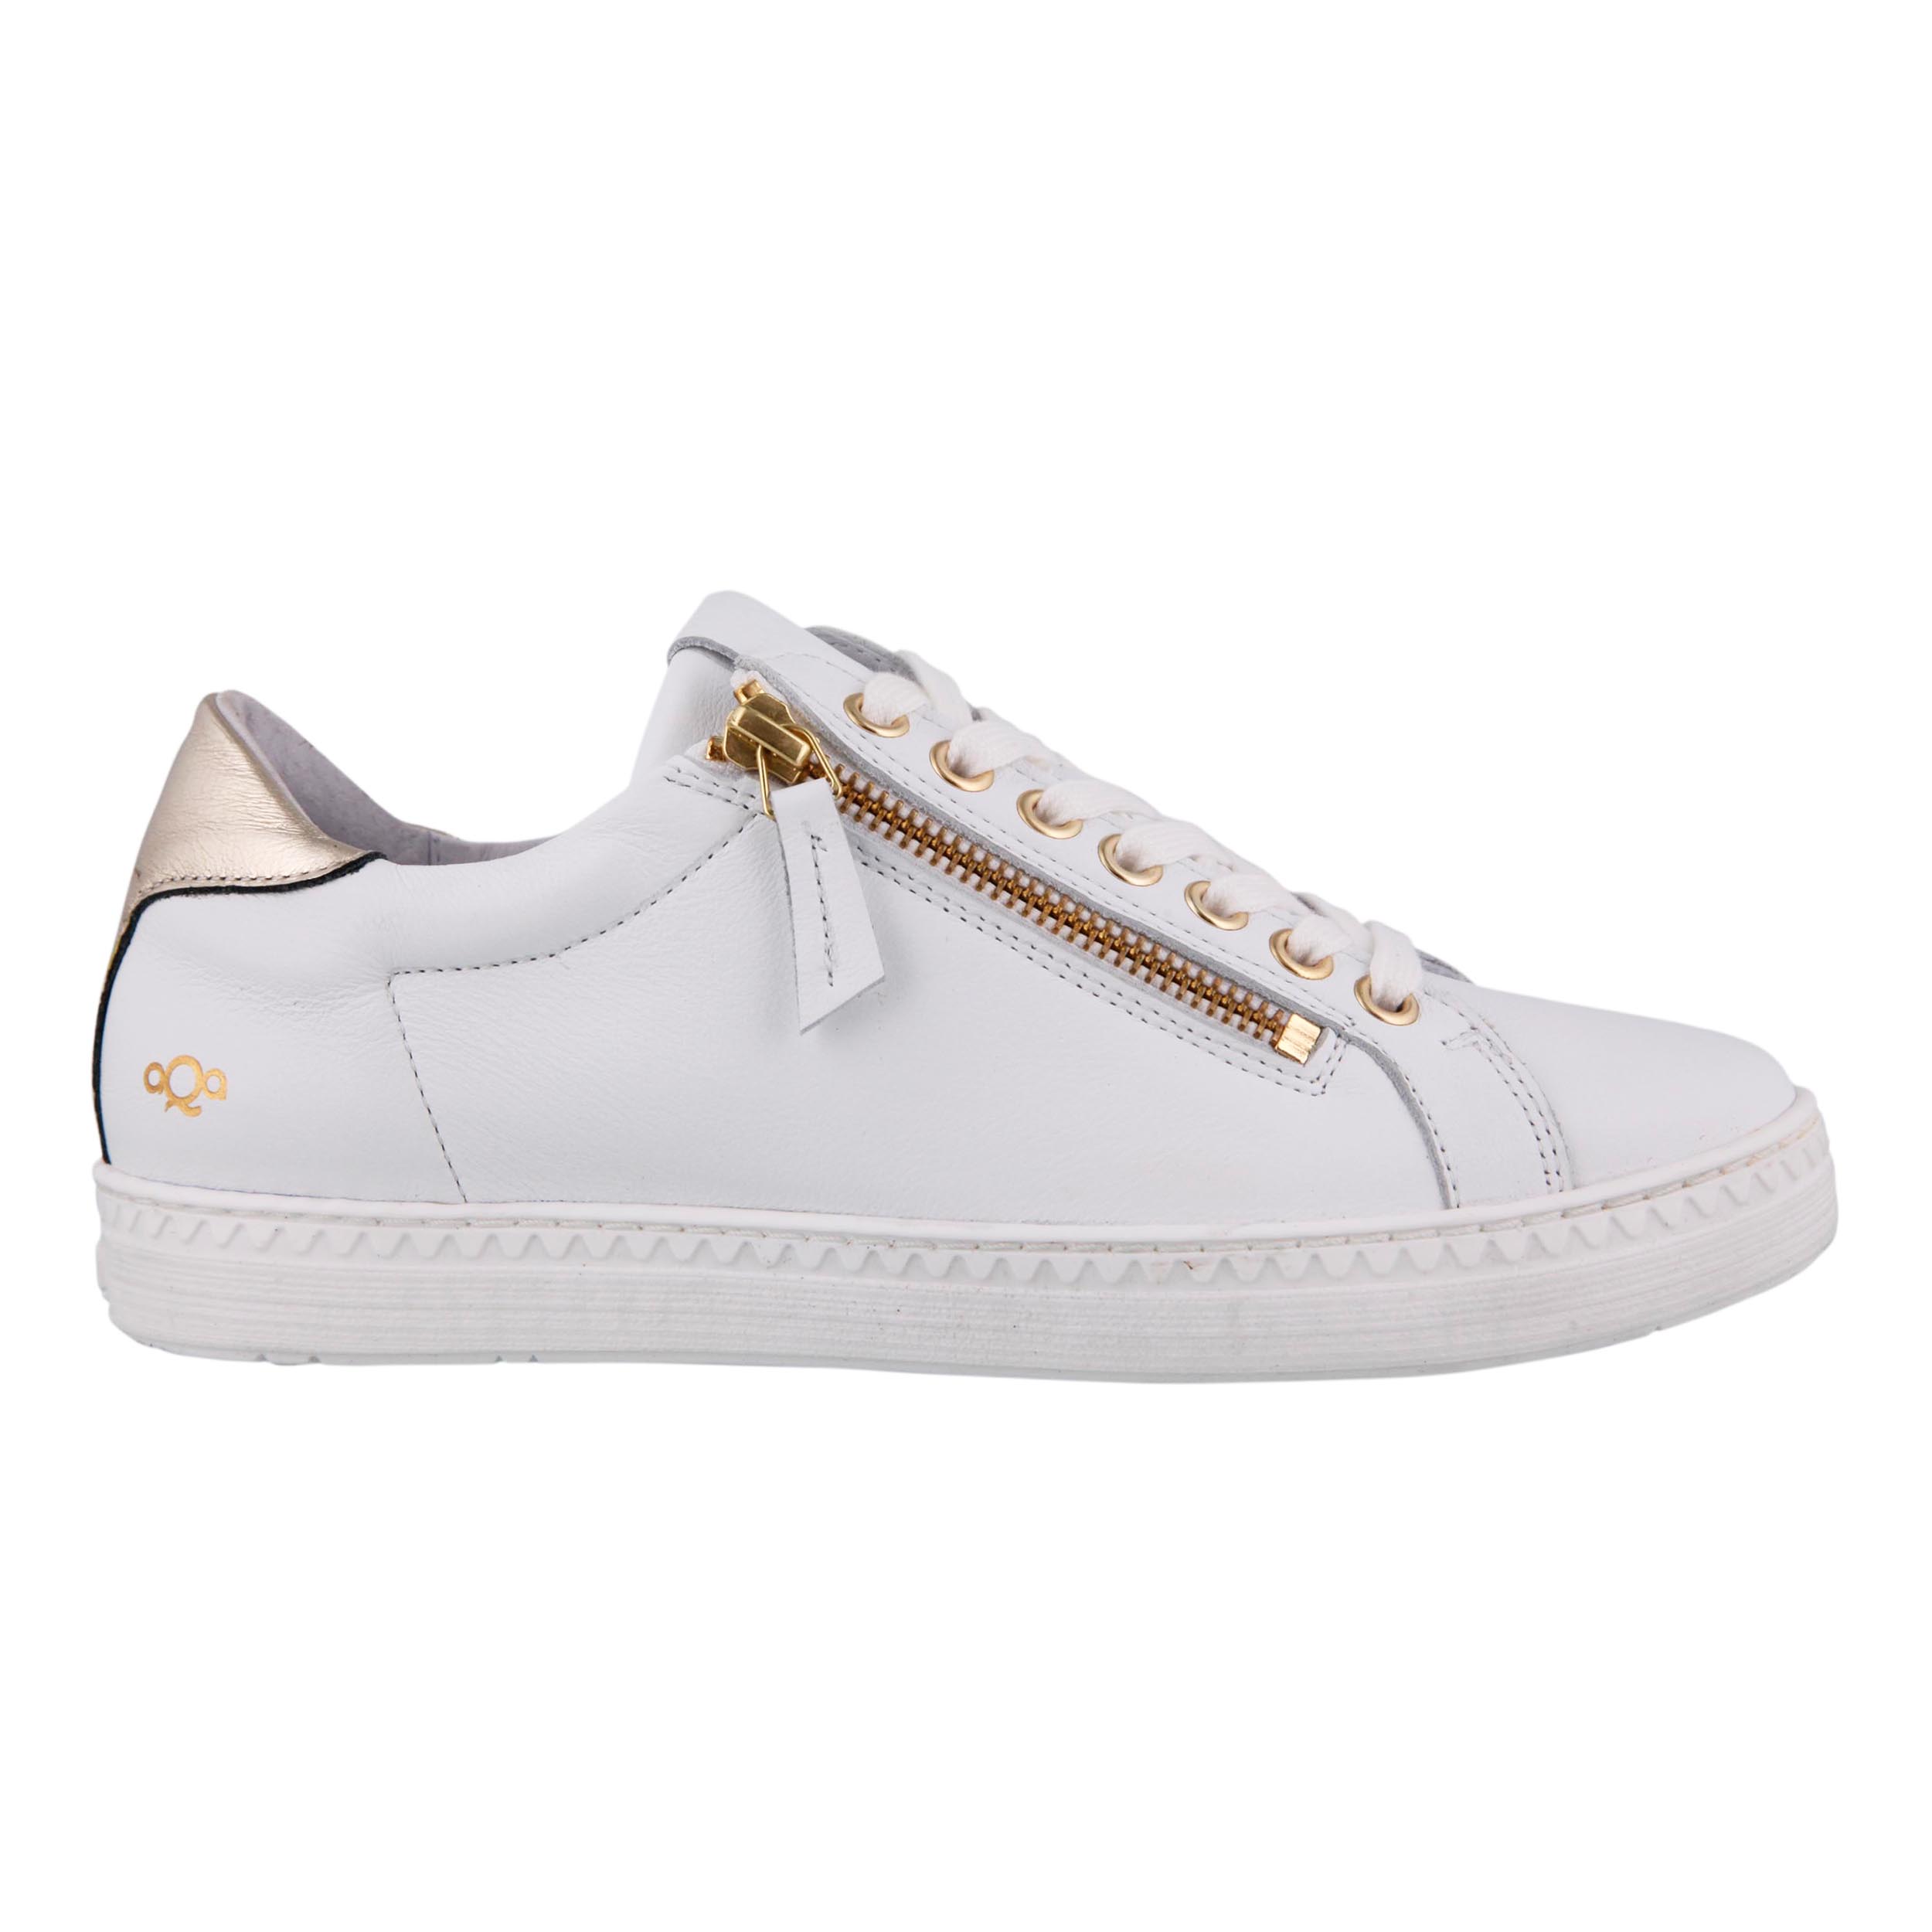 AQA A8511 Sneaker Velvet Optic White El Dorado Gold